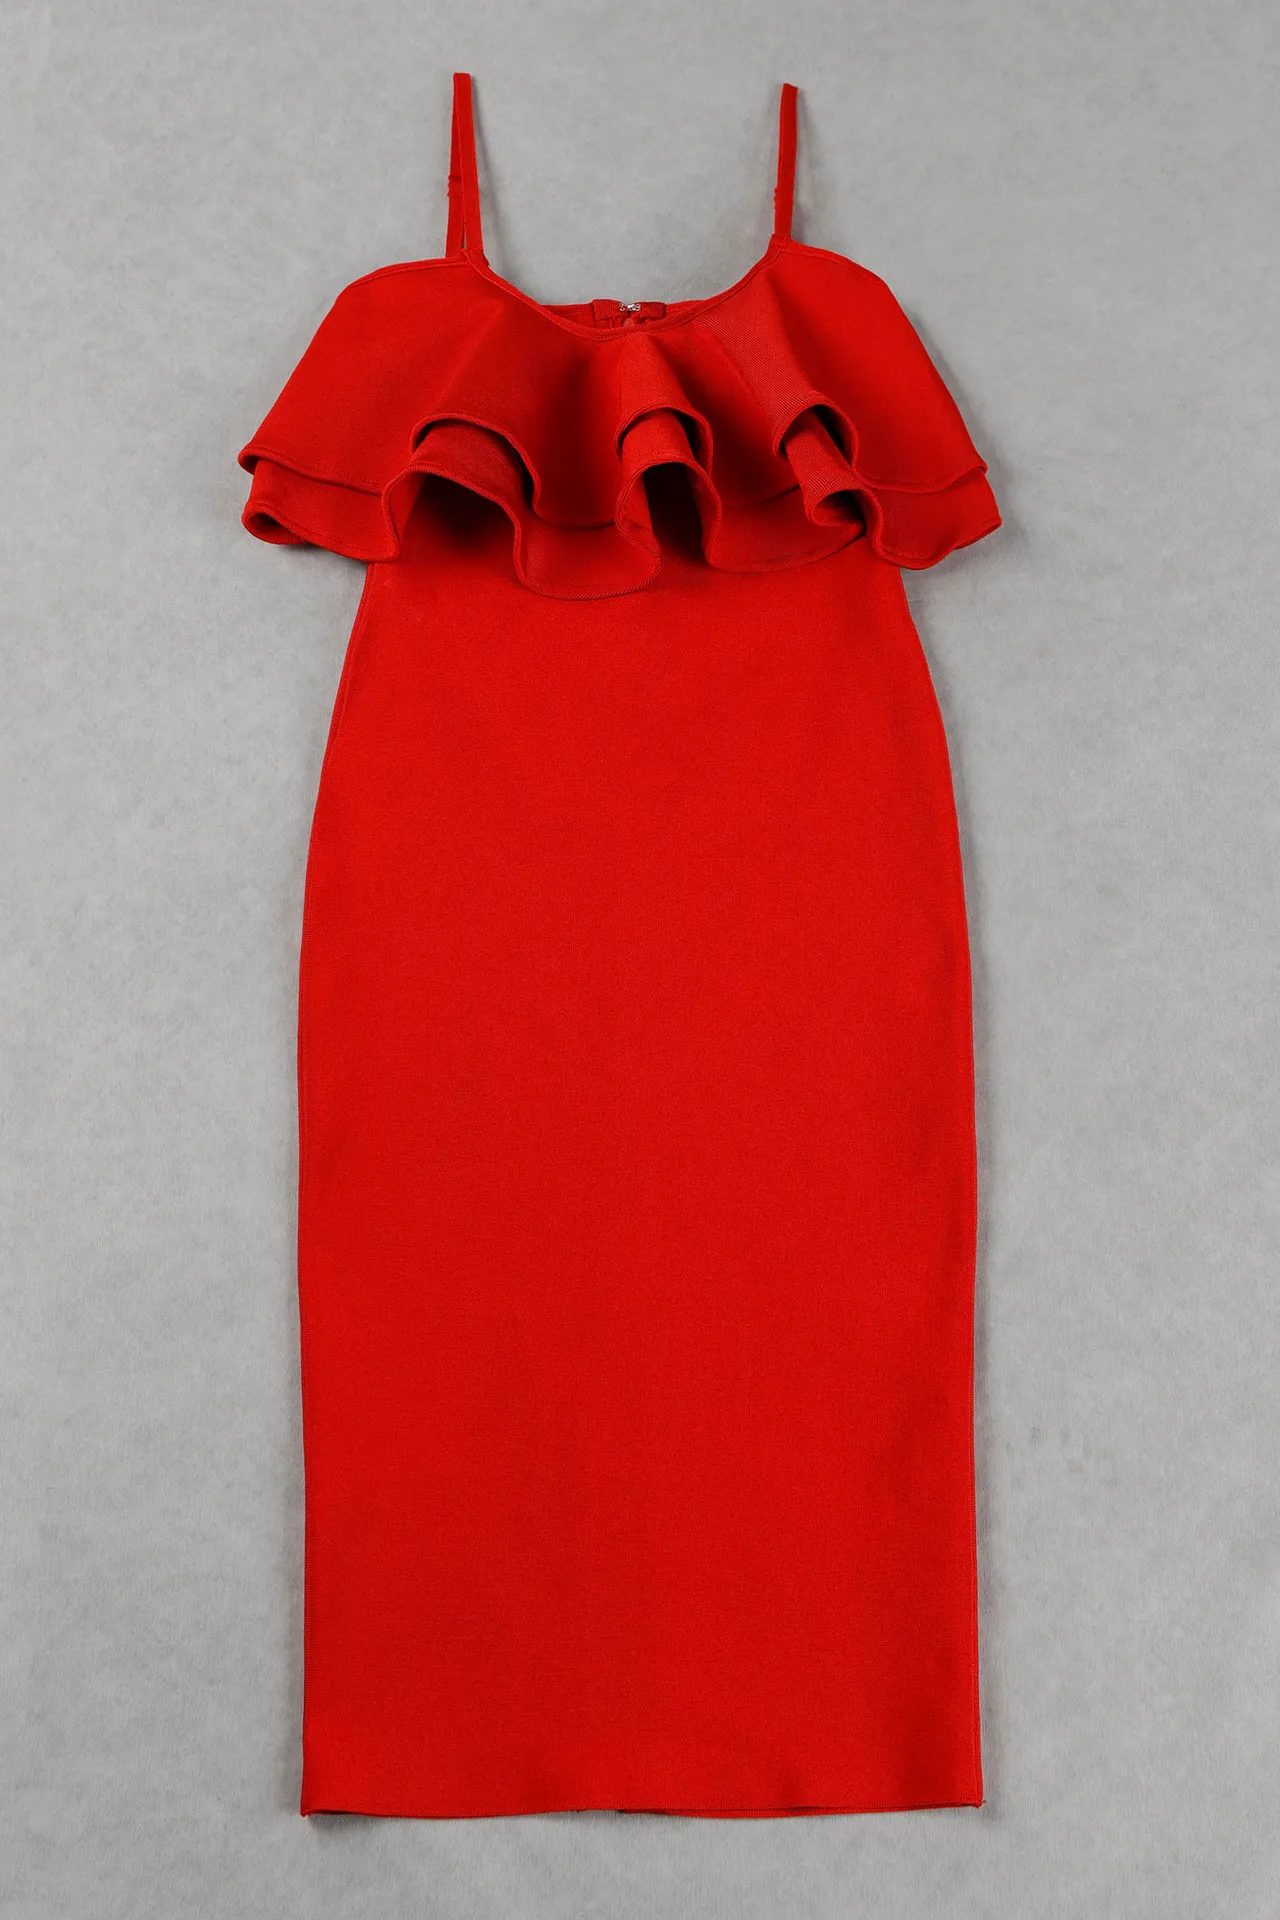 Красное платье с оборками на тонких бретельках, женские вечерние облегающие Клубные Модные облегающие платья, стильные халаты